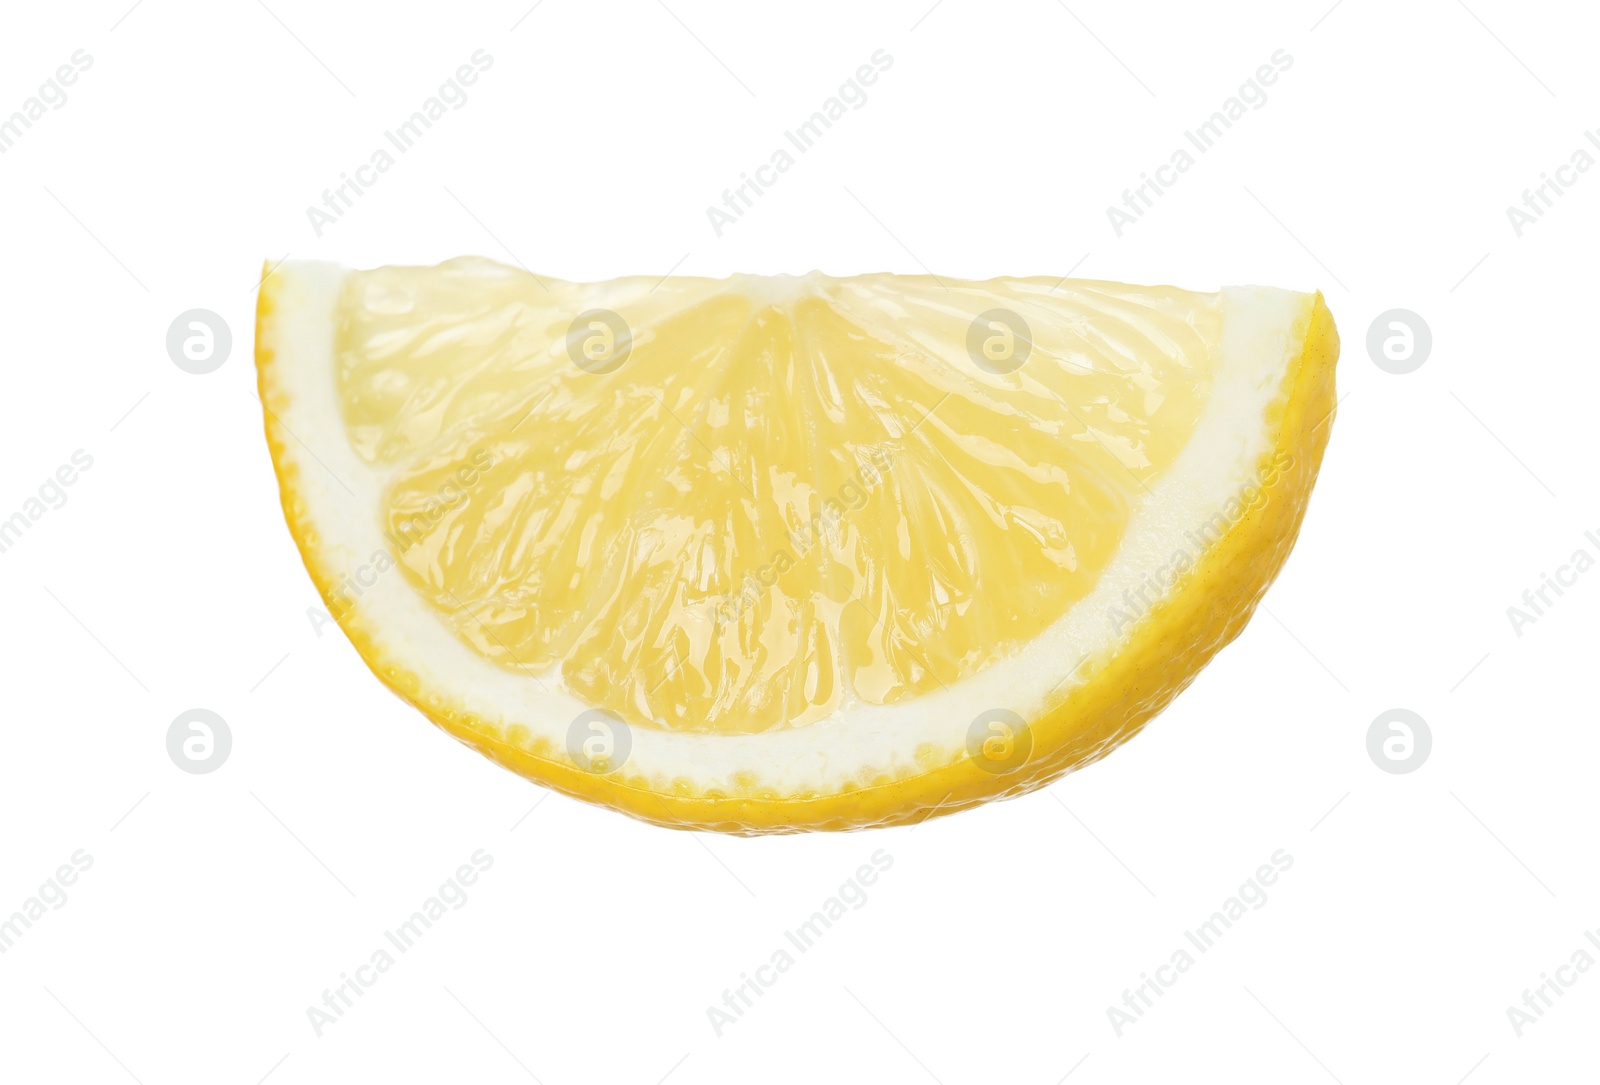 Photo of Slice of fresh lemon isolated on white